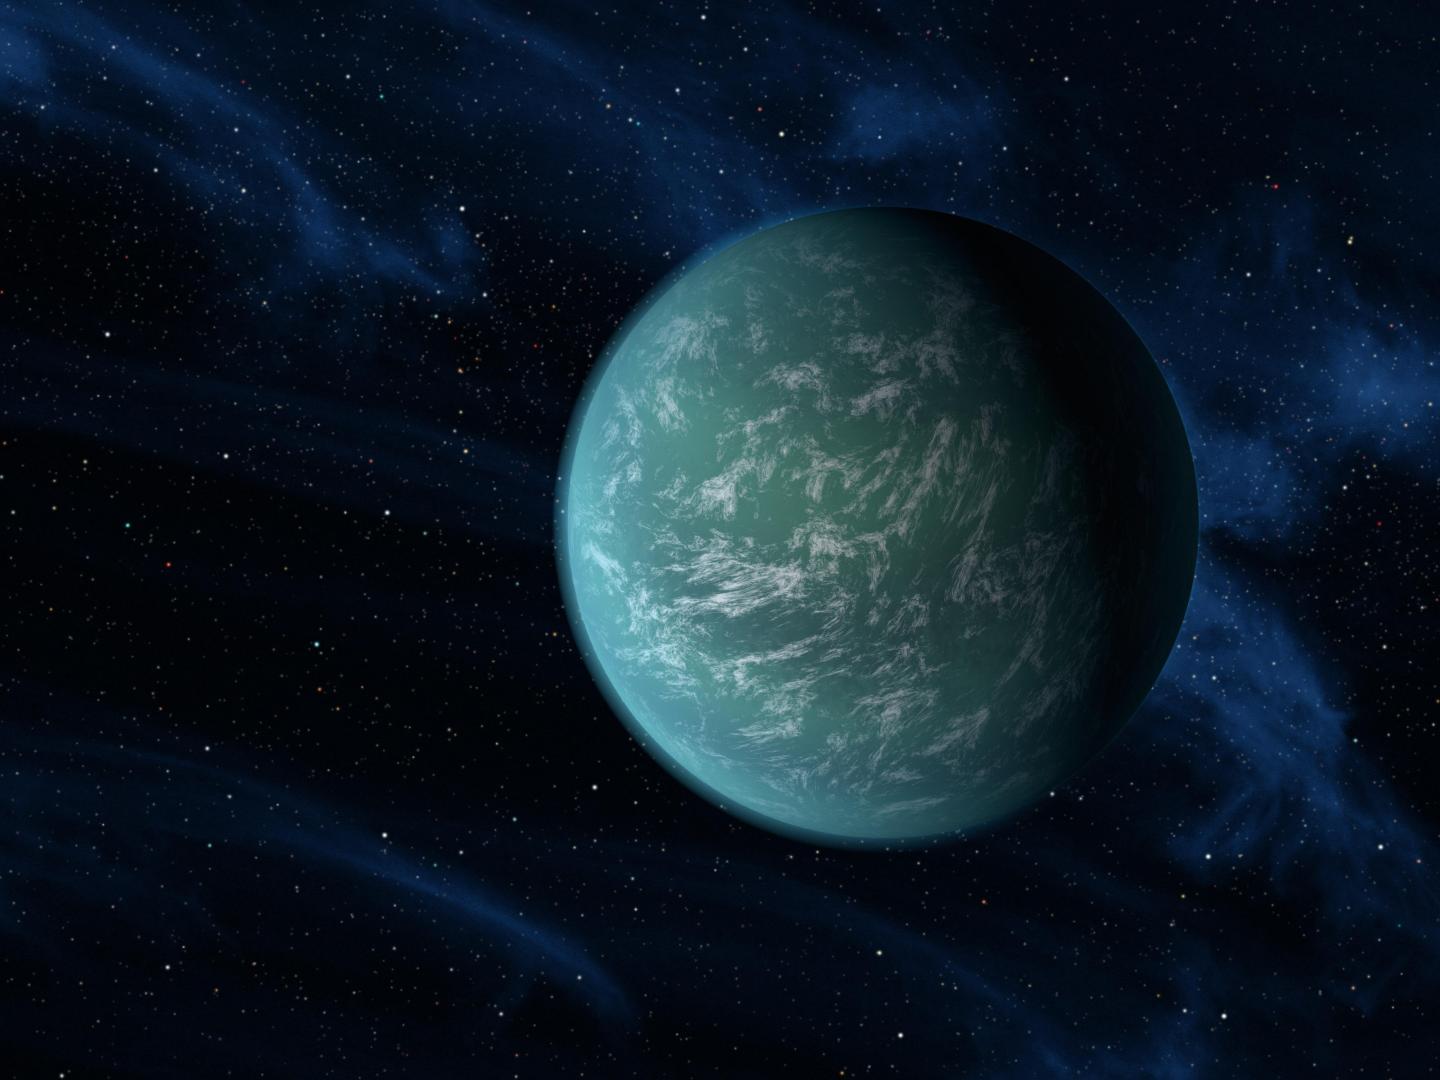 Artist's Depiction of Exoplanet Kepler 22b